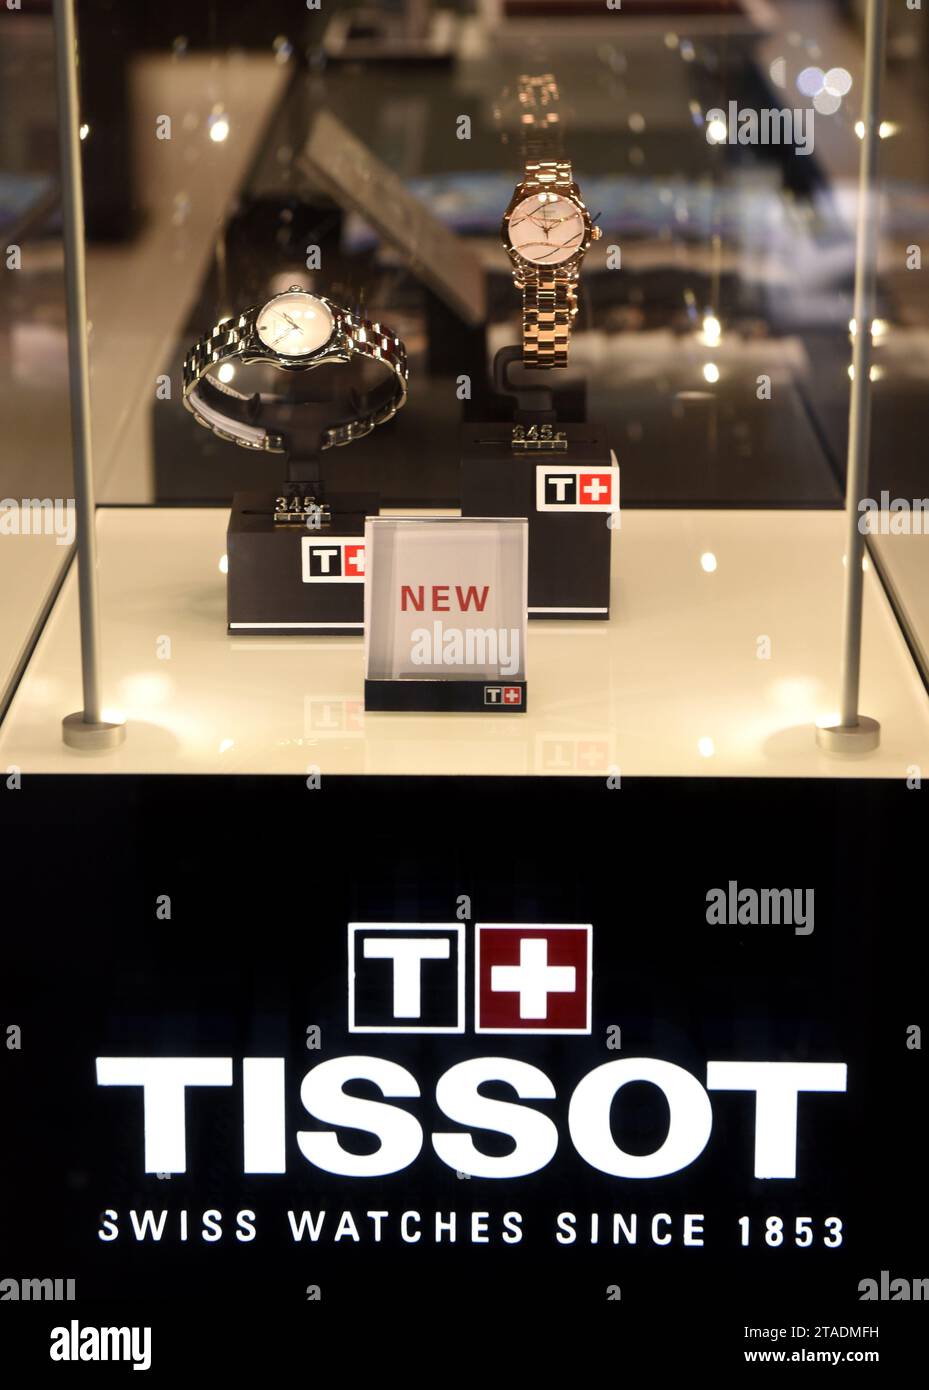 Zürich, Schweiz - 03. Juni 2017: Berühmte Schweizer Uhren Tissot im Shop in Zürich. Stockfoto